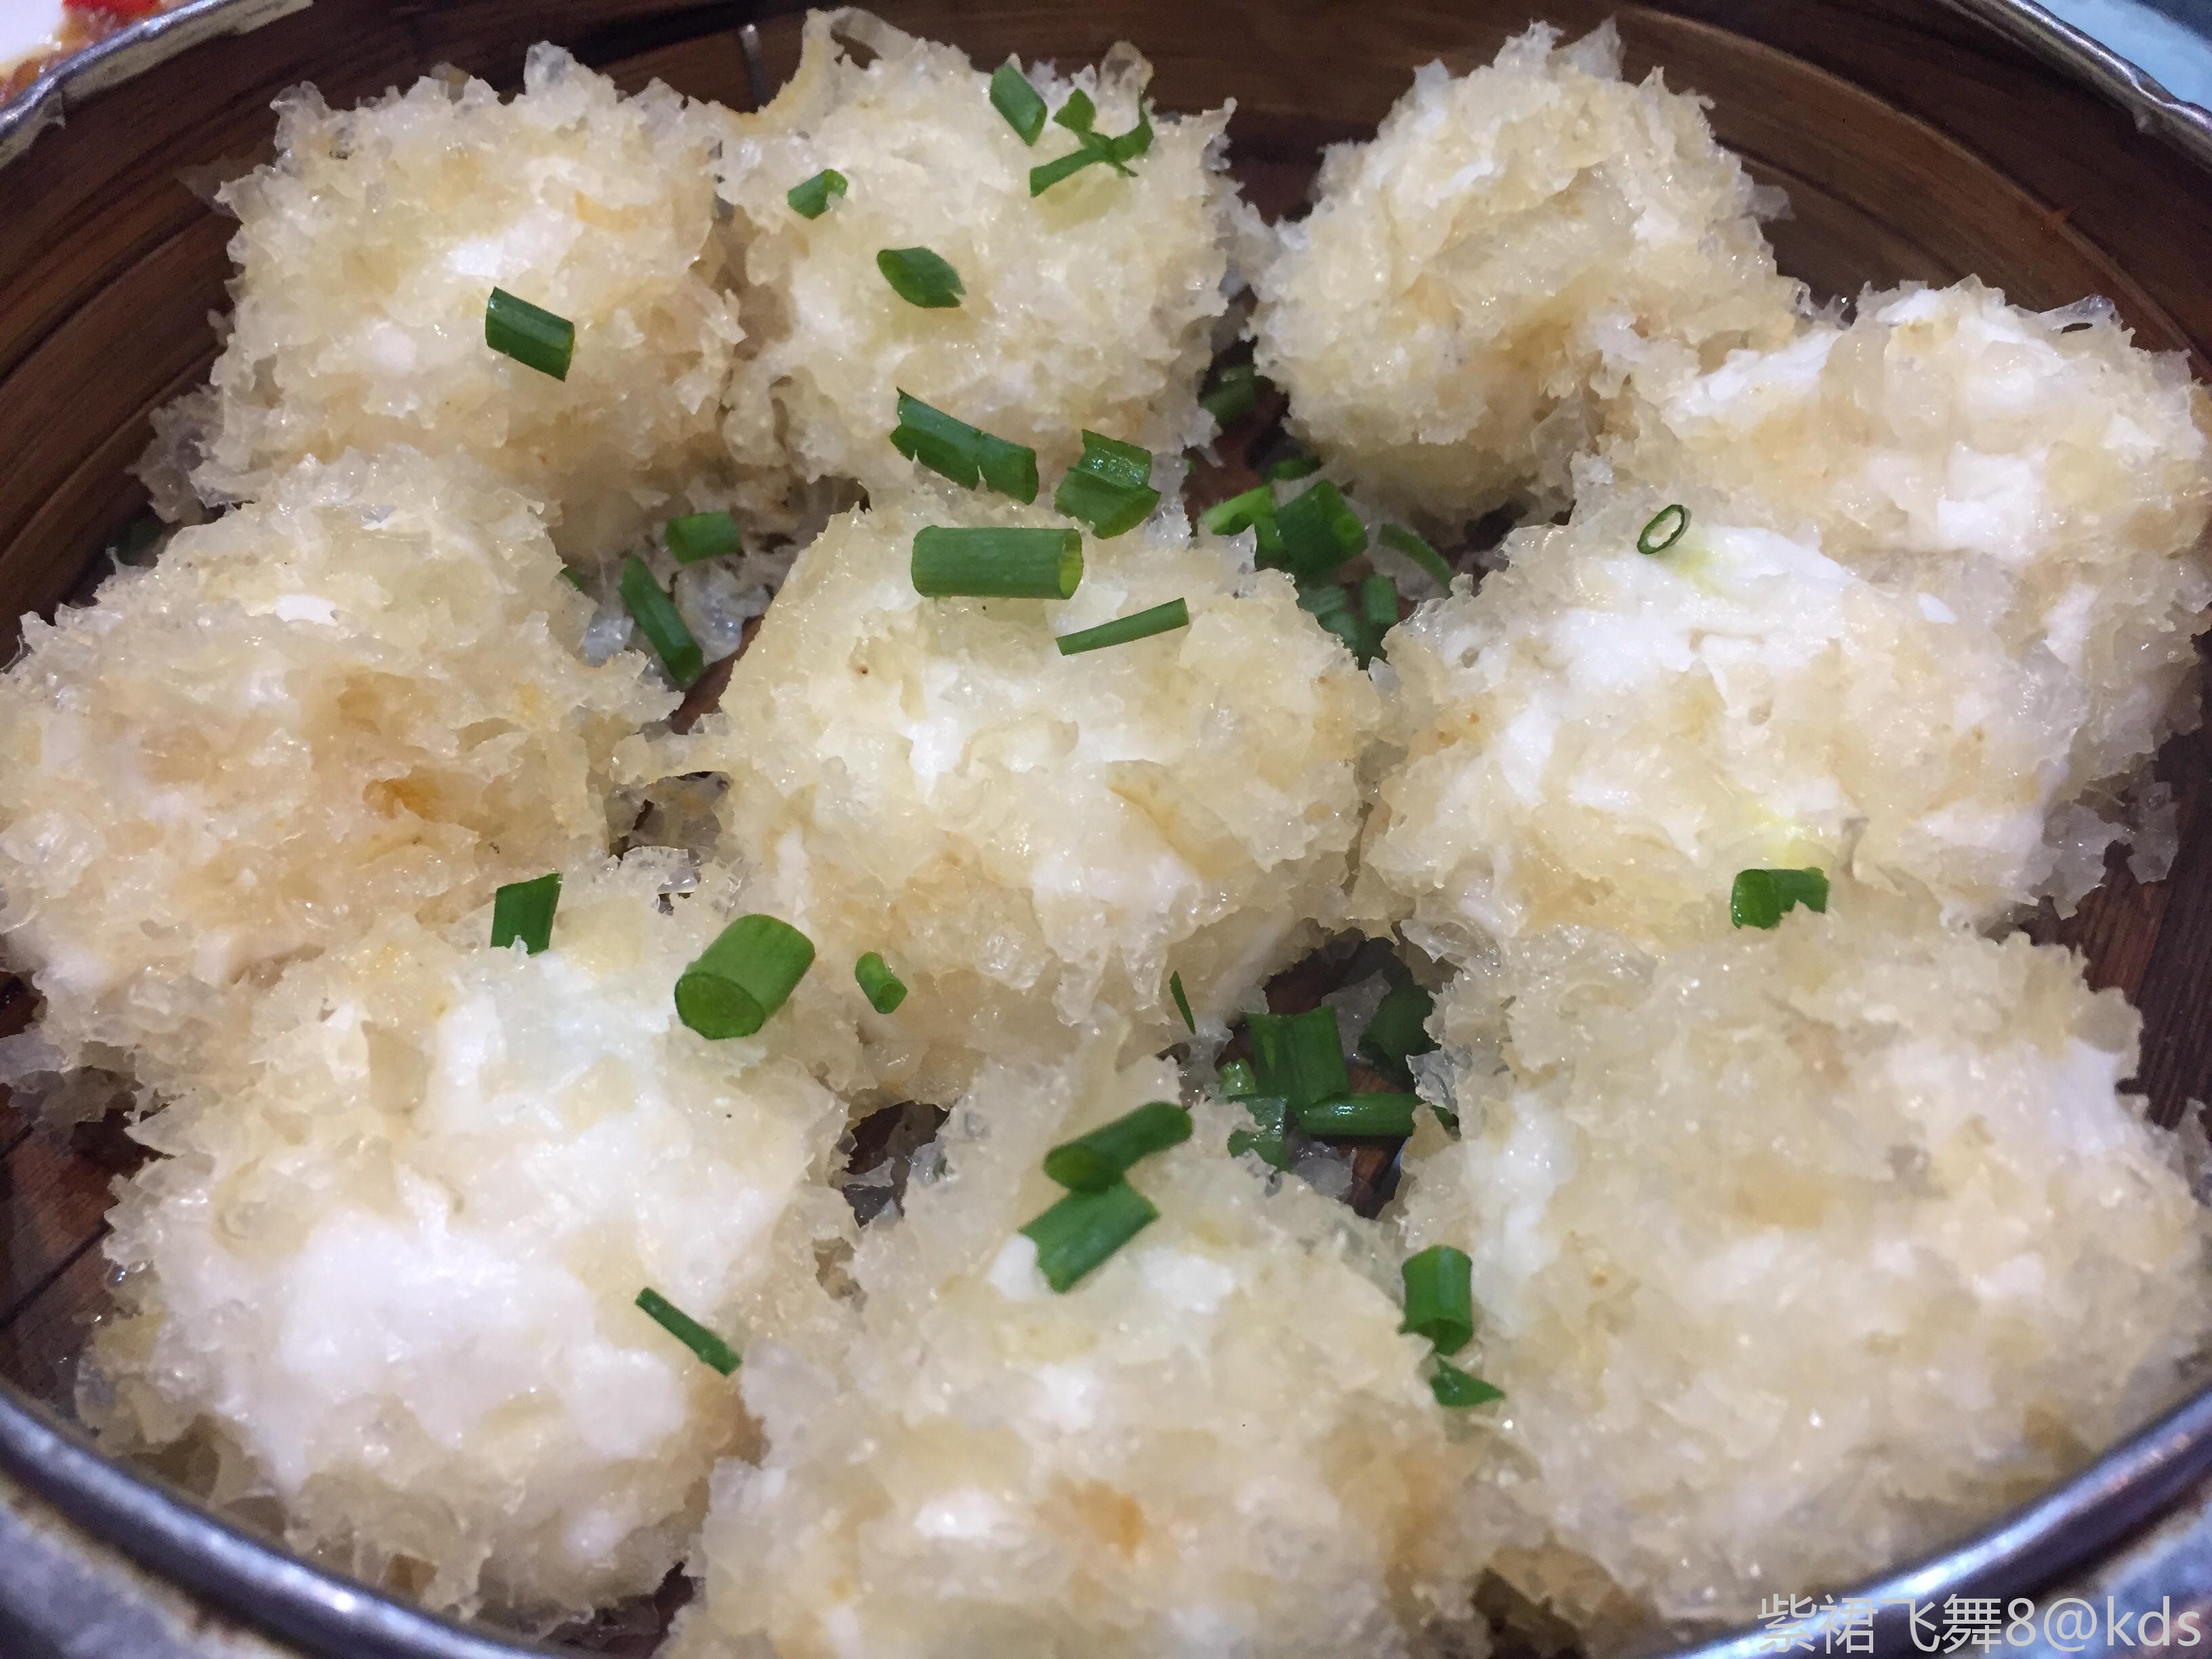 宴球:浙江海宁长安镇传统名菜 鲜美的鱼球外裹油炸肉皮屑,完美